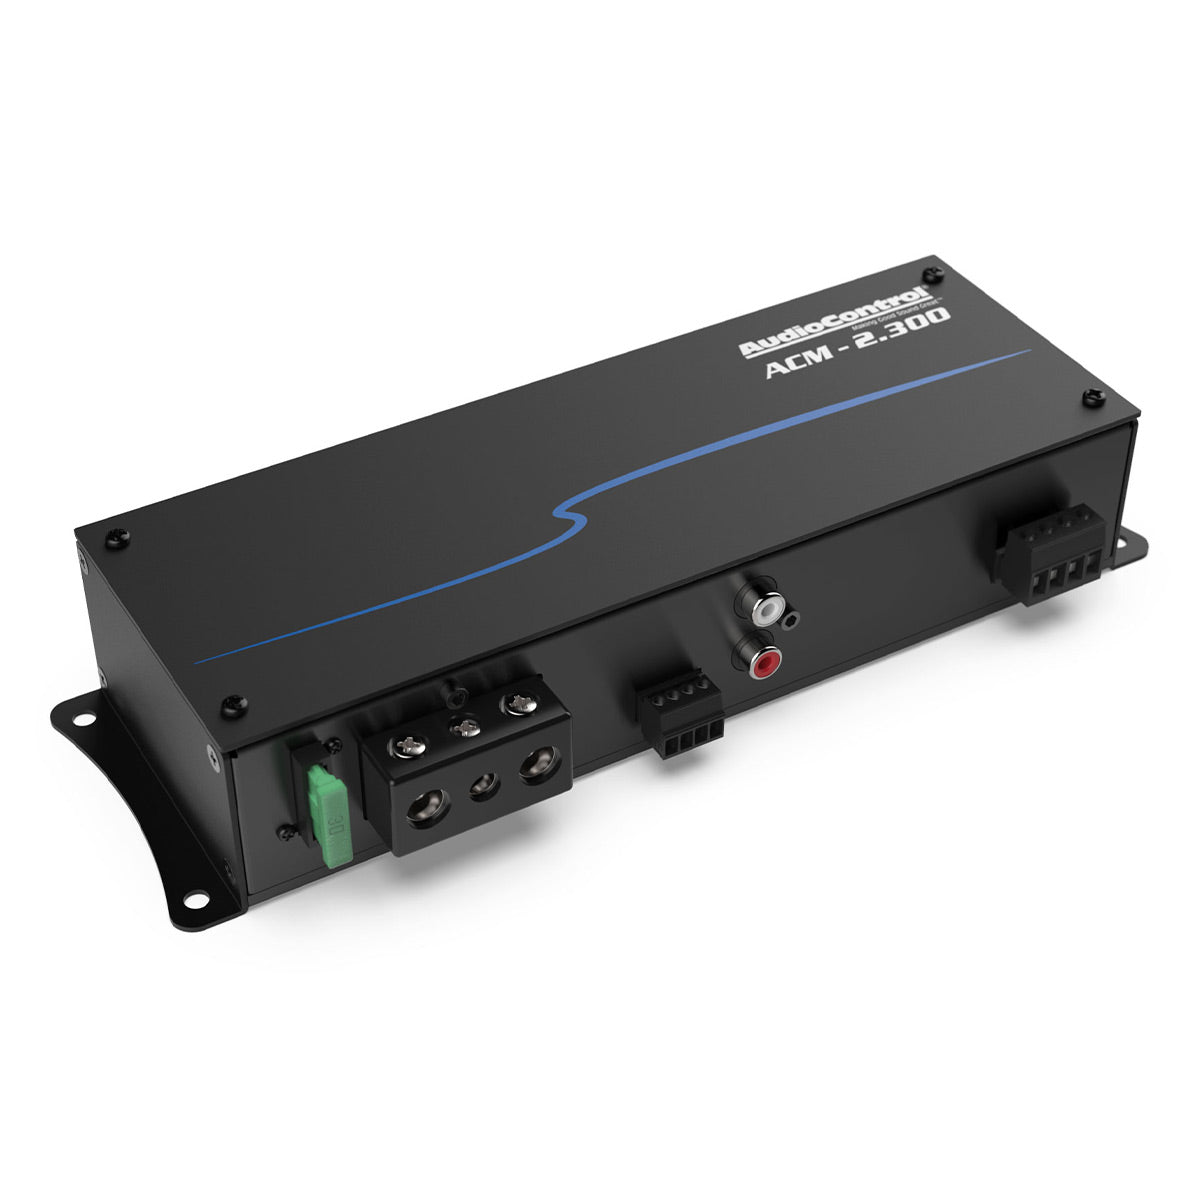 AudioControl ACM-2.300 2-Channel Micro Amplifier